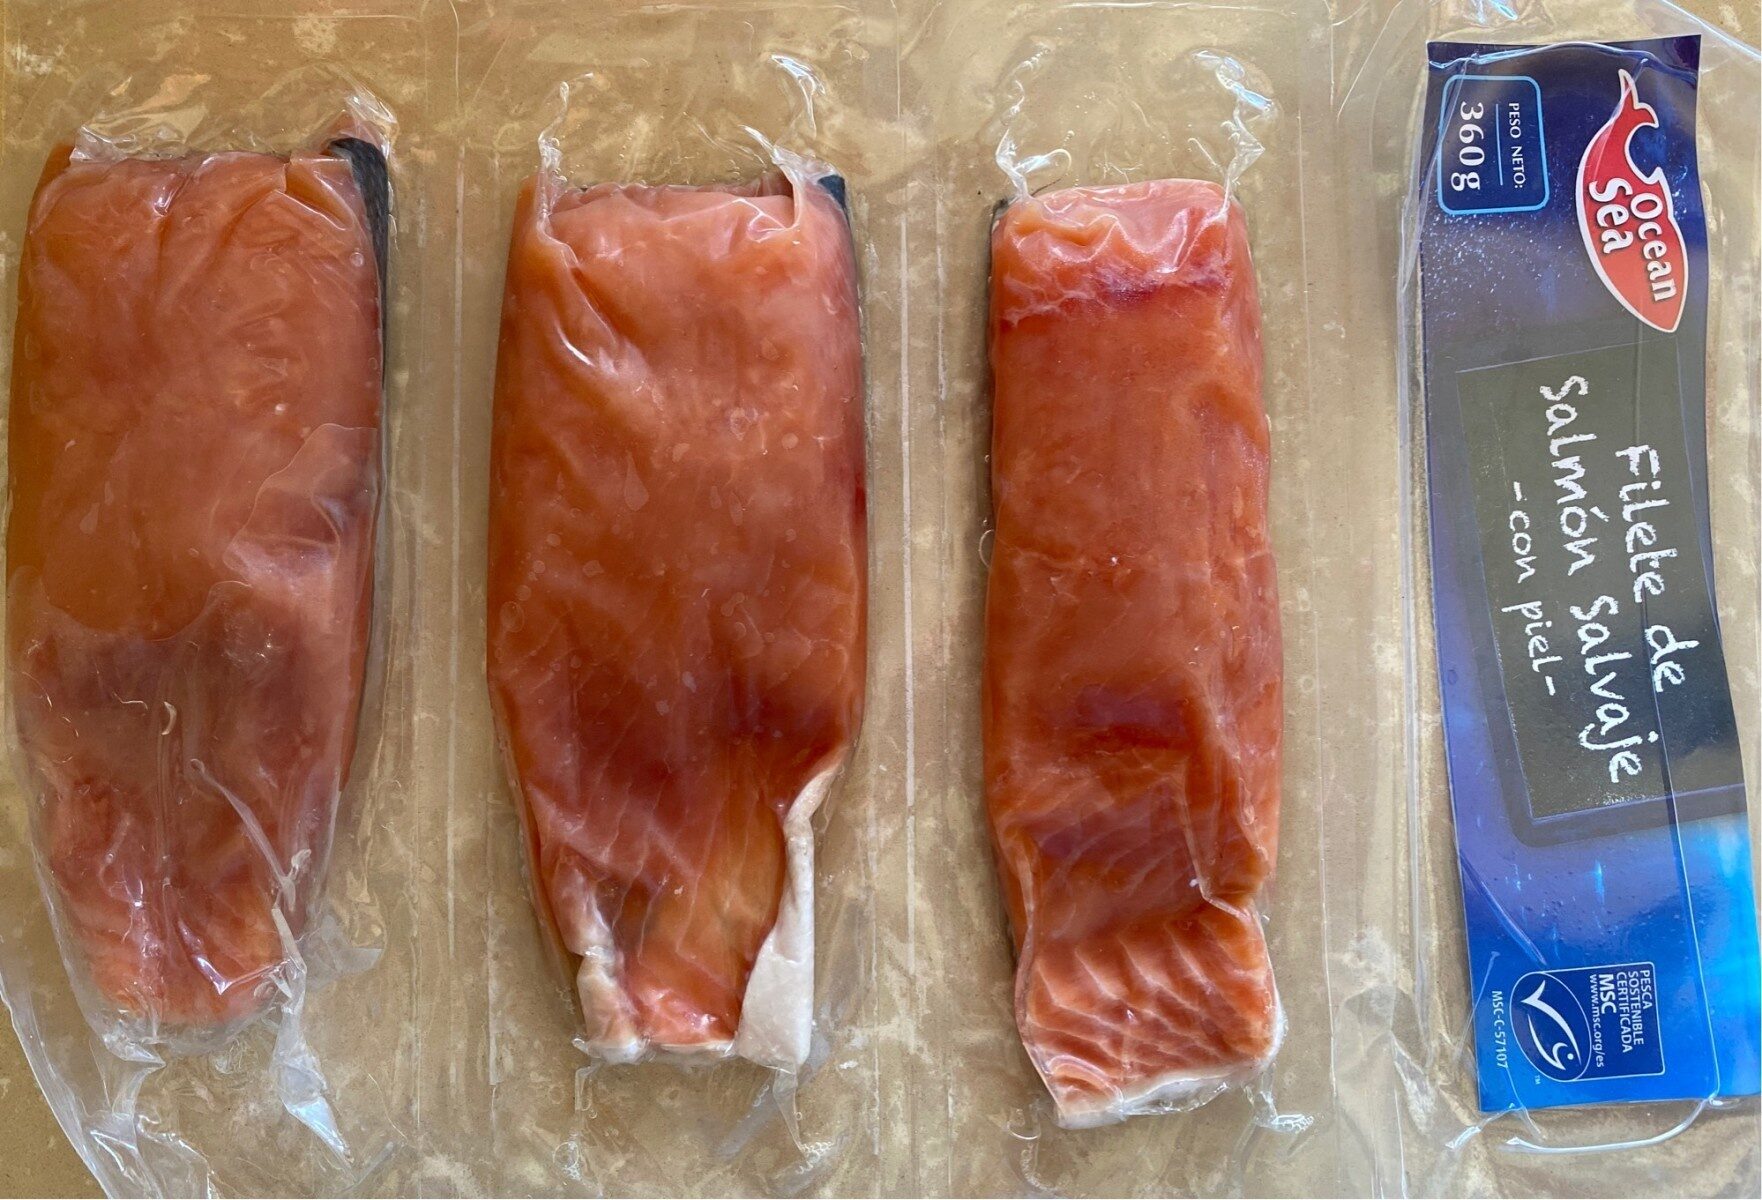 Filete de salmon salvaje - Producte - es